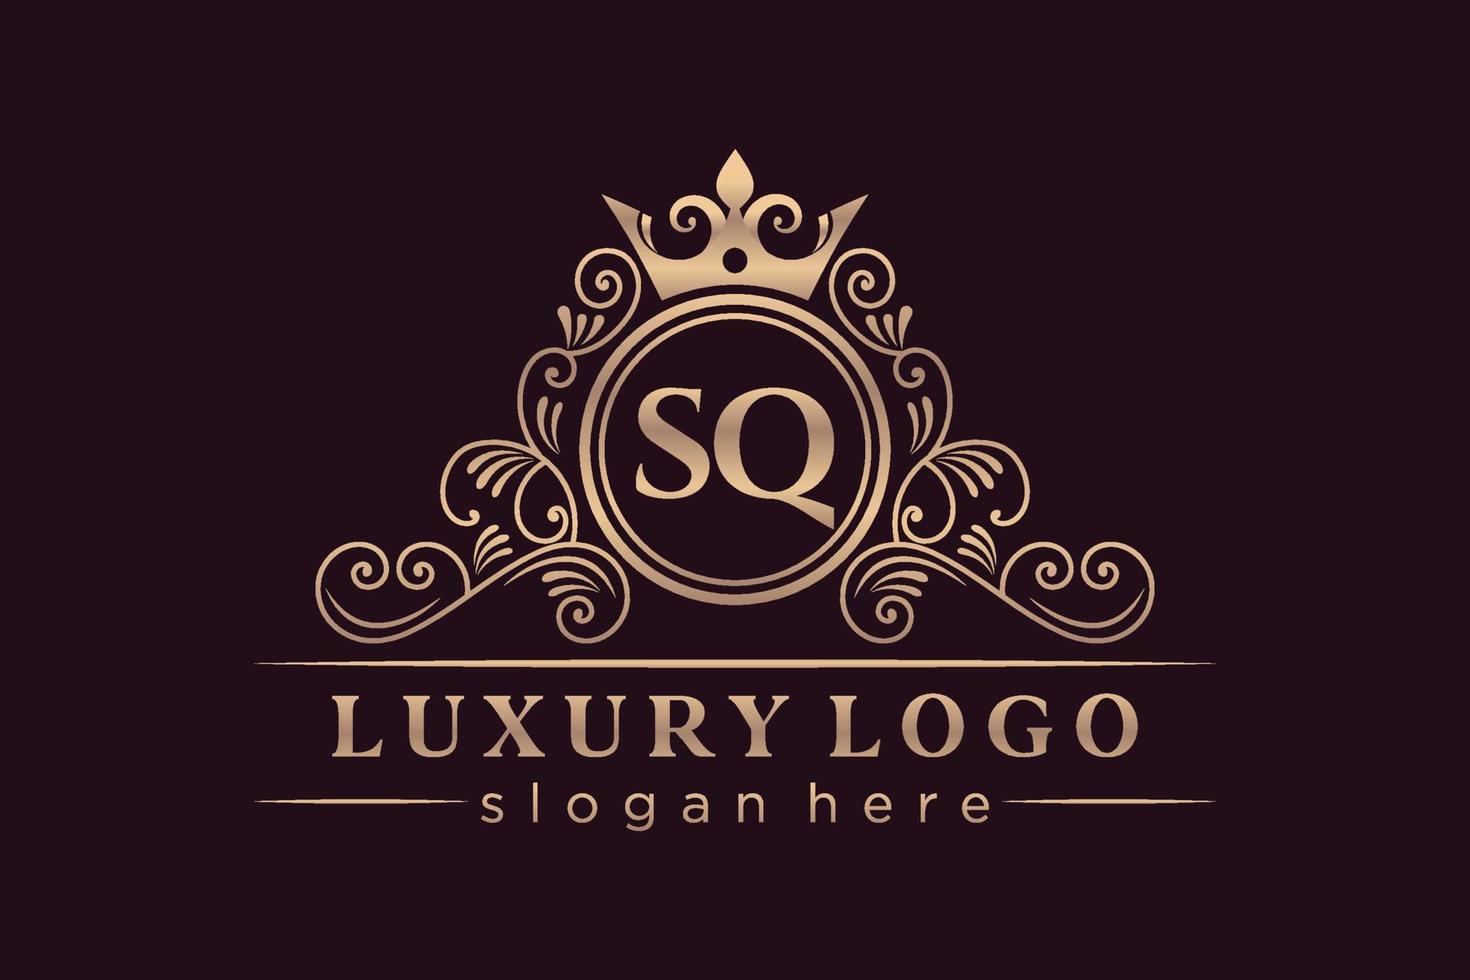 SQ Initial Letter Gold calligraphic feminine floral hand drawn heraldic monogram antique vintage style luxury logo design Premium Vector